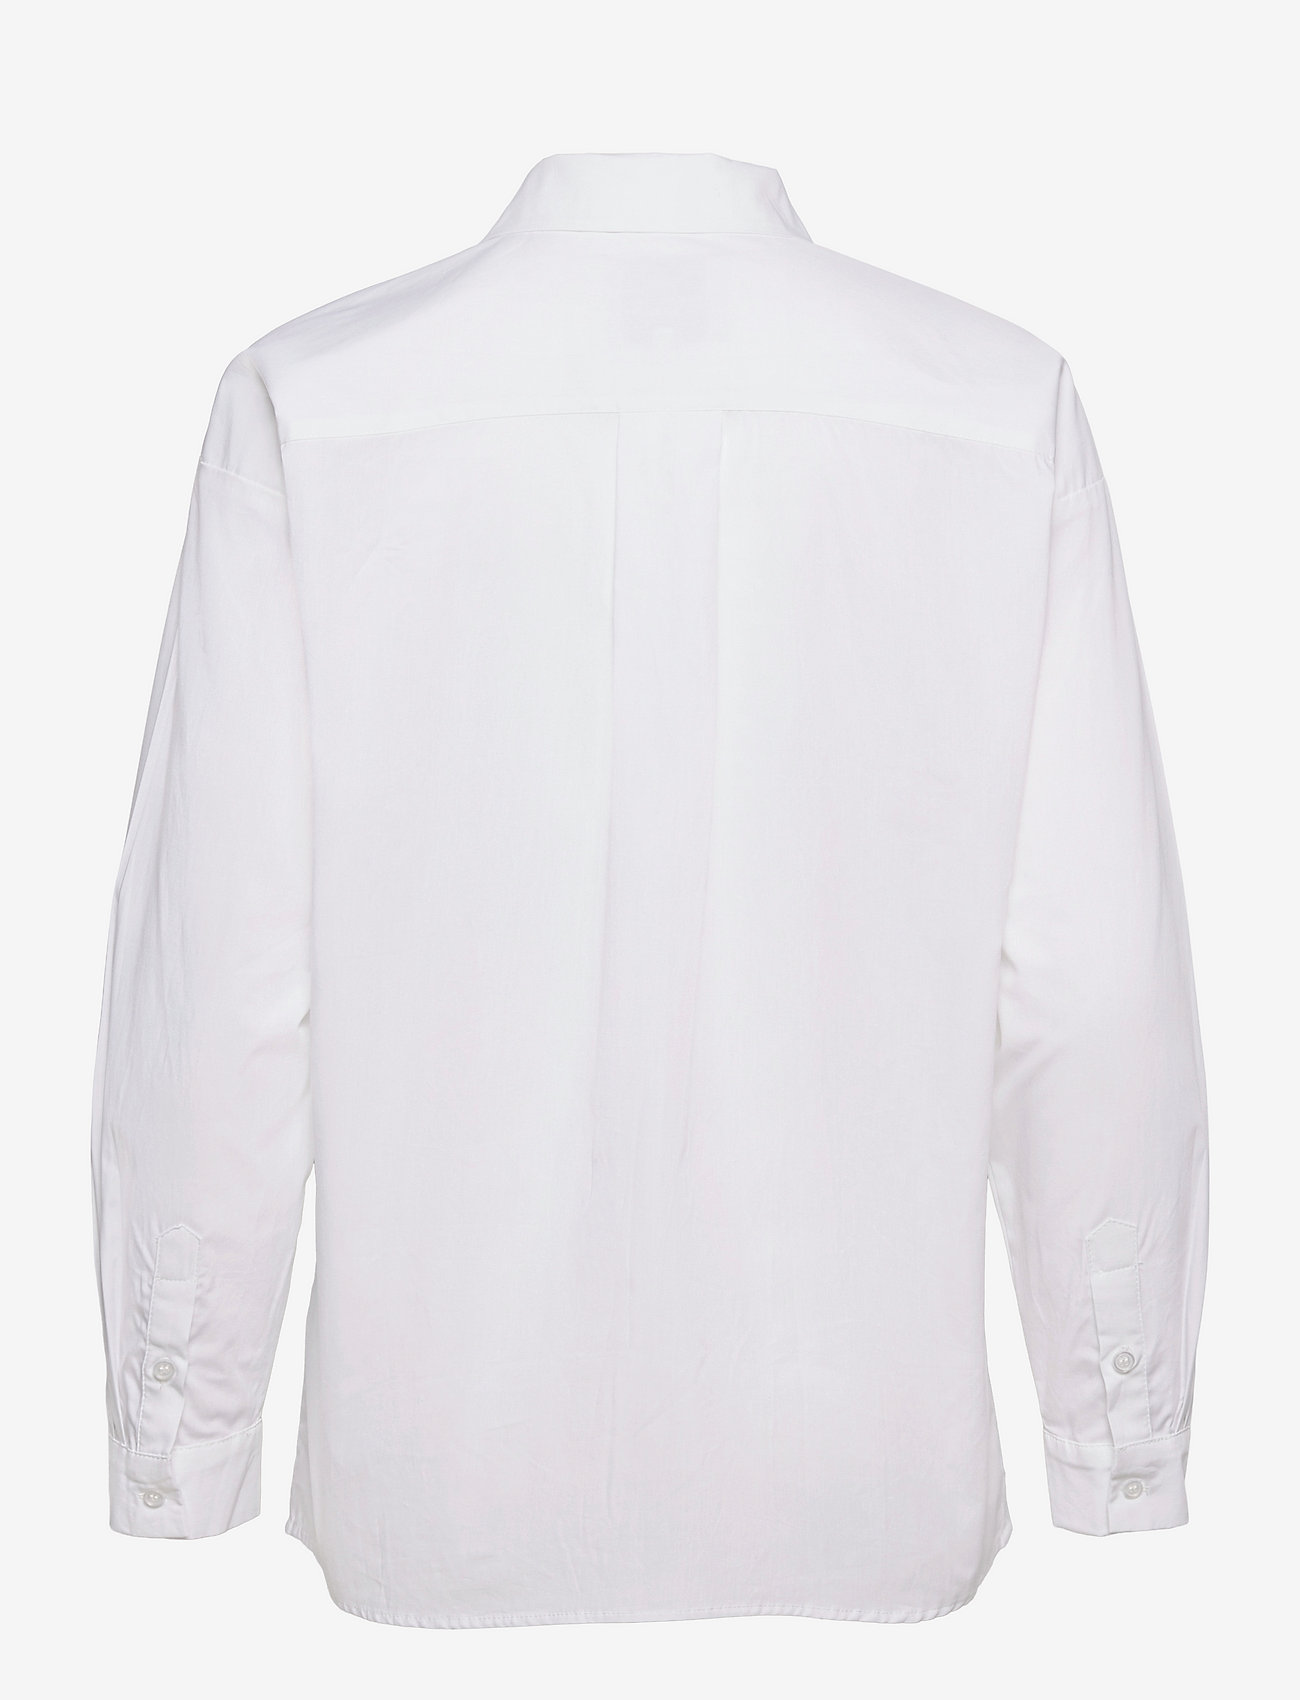 My Essential Wardrobe - 03 THE SHIRT - overhemden met lange mouwen - bright white - 1